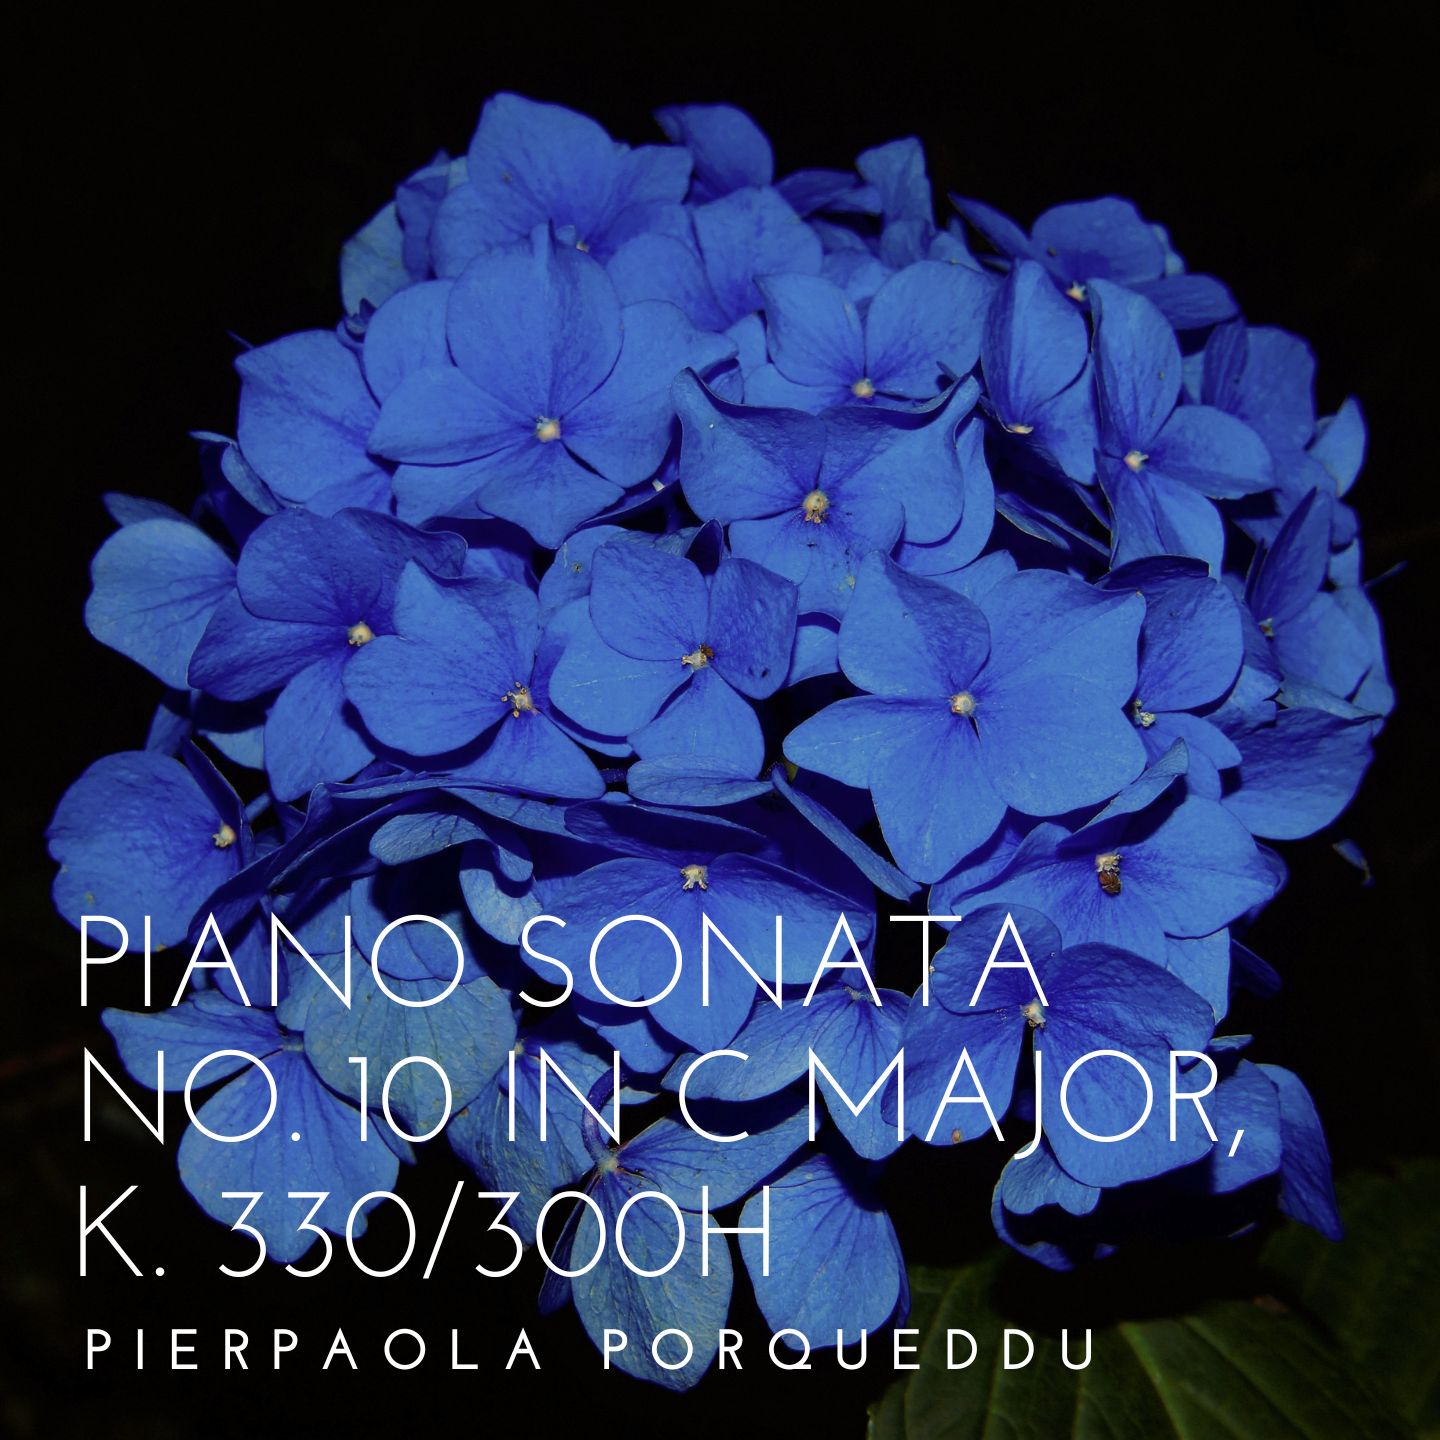 Piano Sonata No. 10 in C major, K. 330/300h